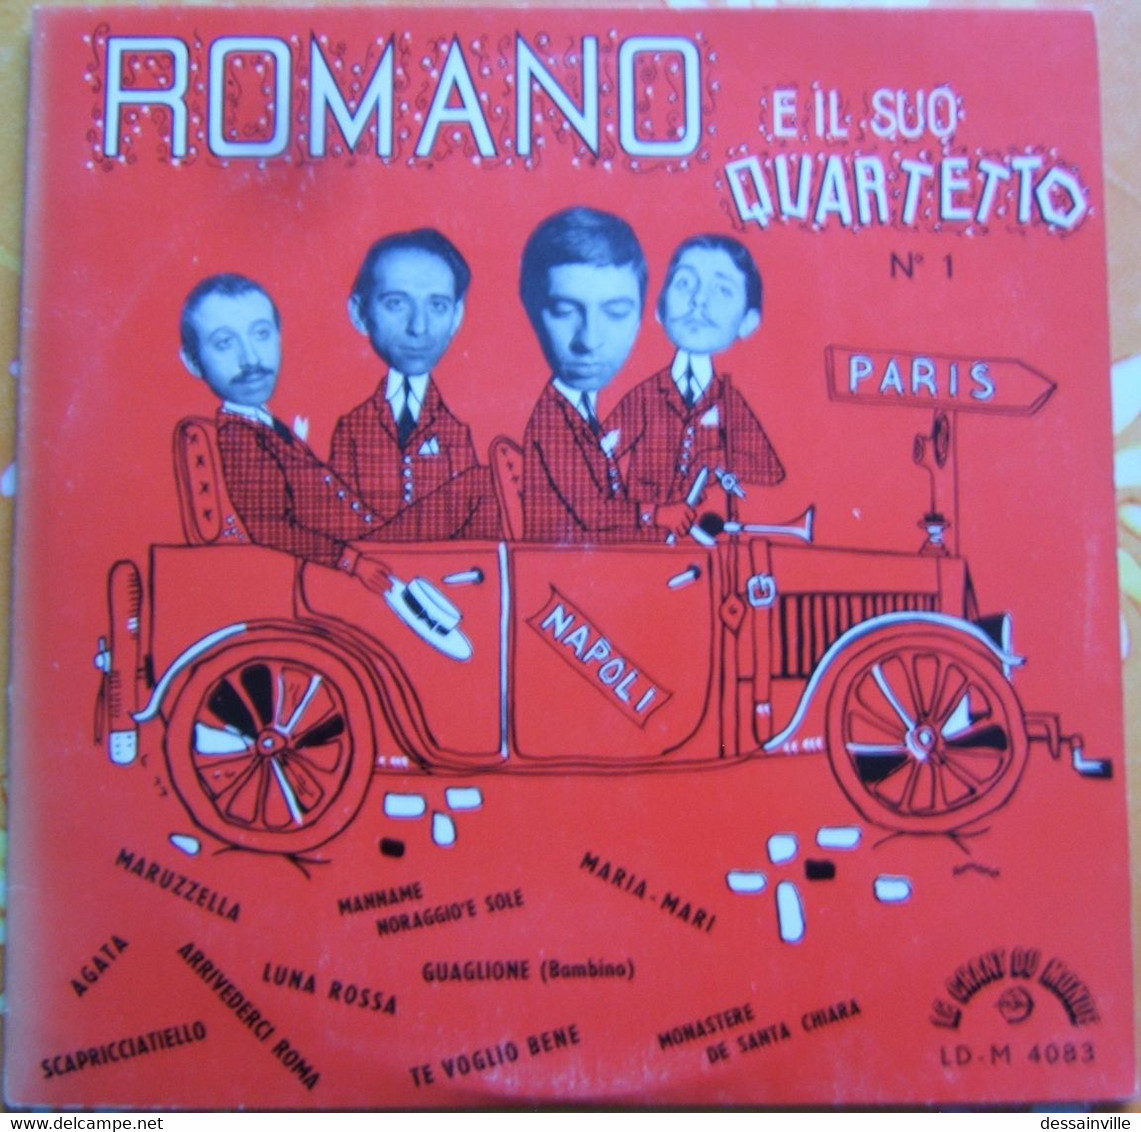 33 Tours 25 Cm - ROMANO E Il Suo Quartetto N° 1 - Other - Italian Music